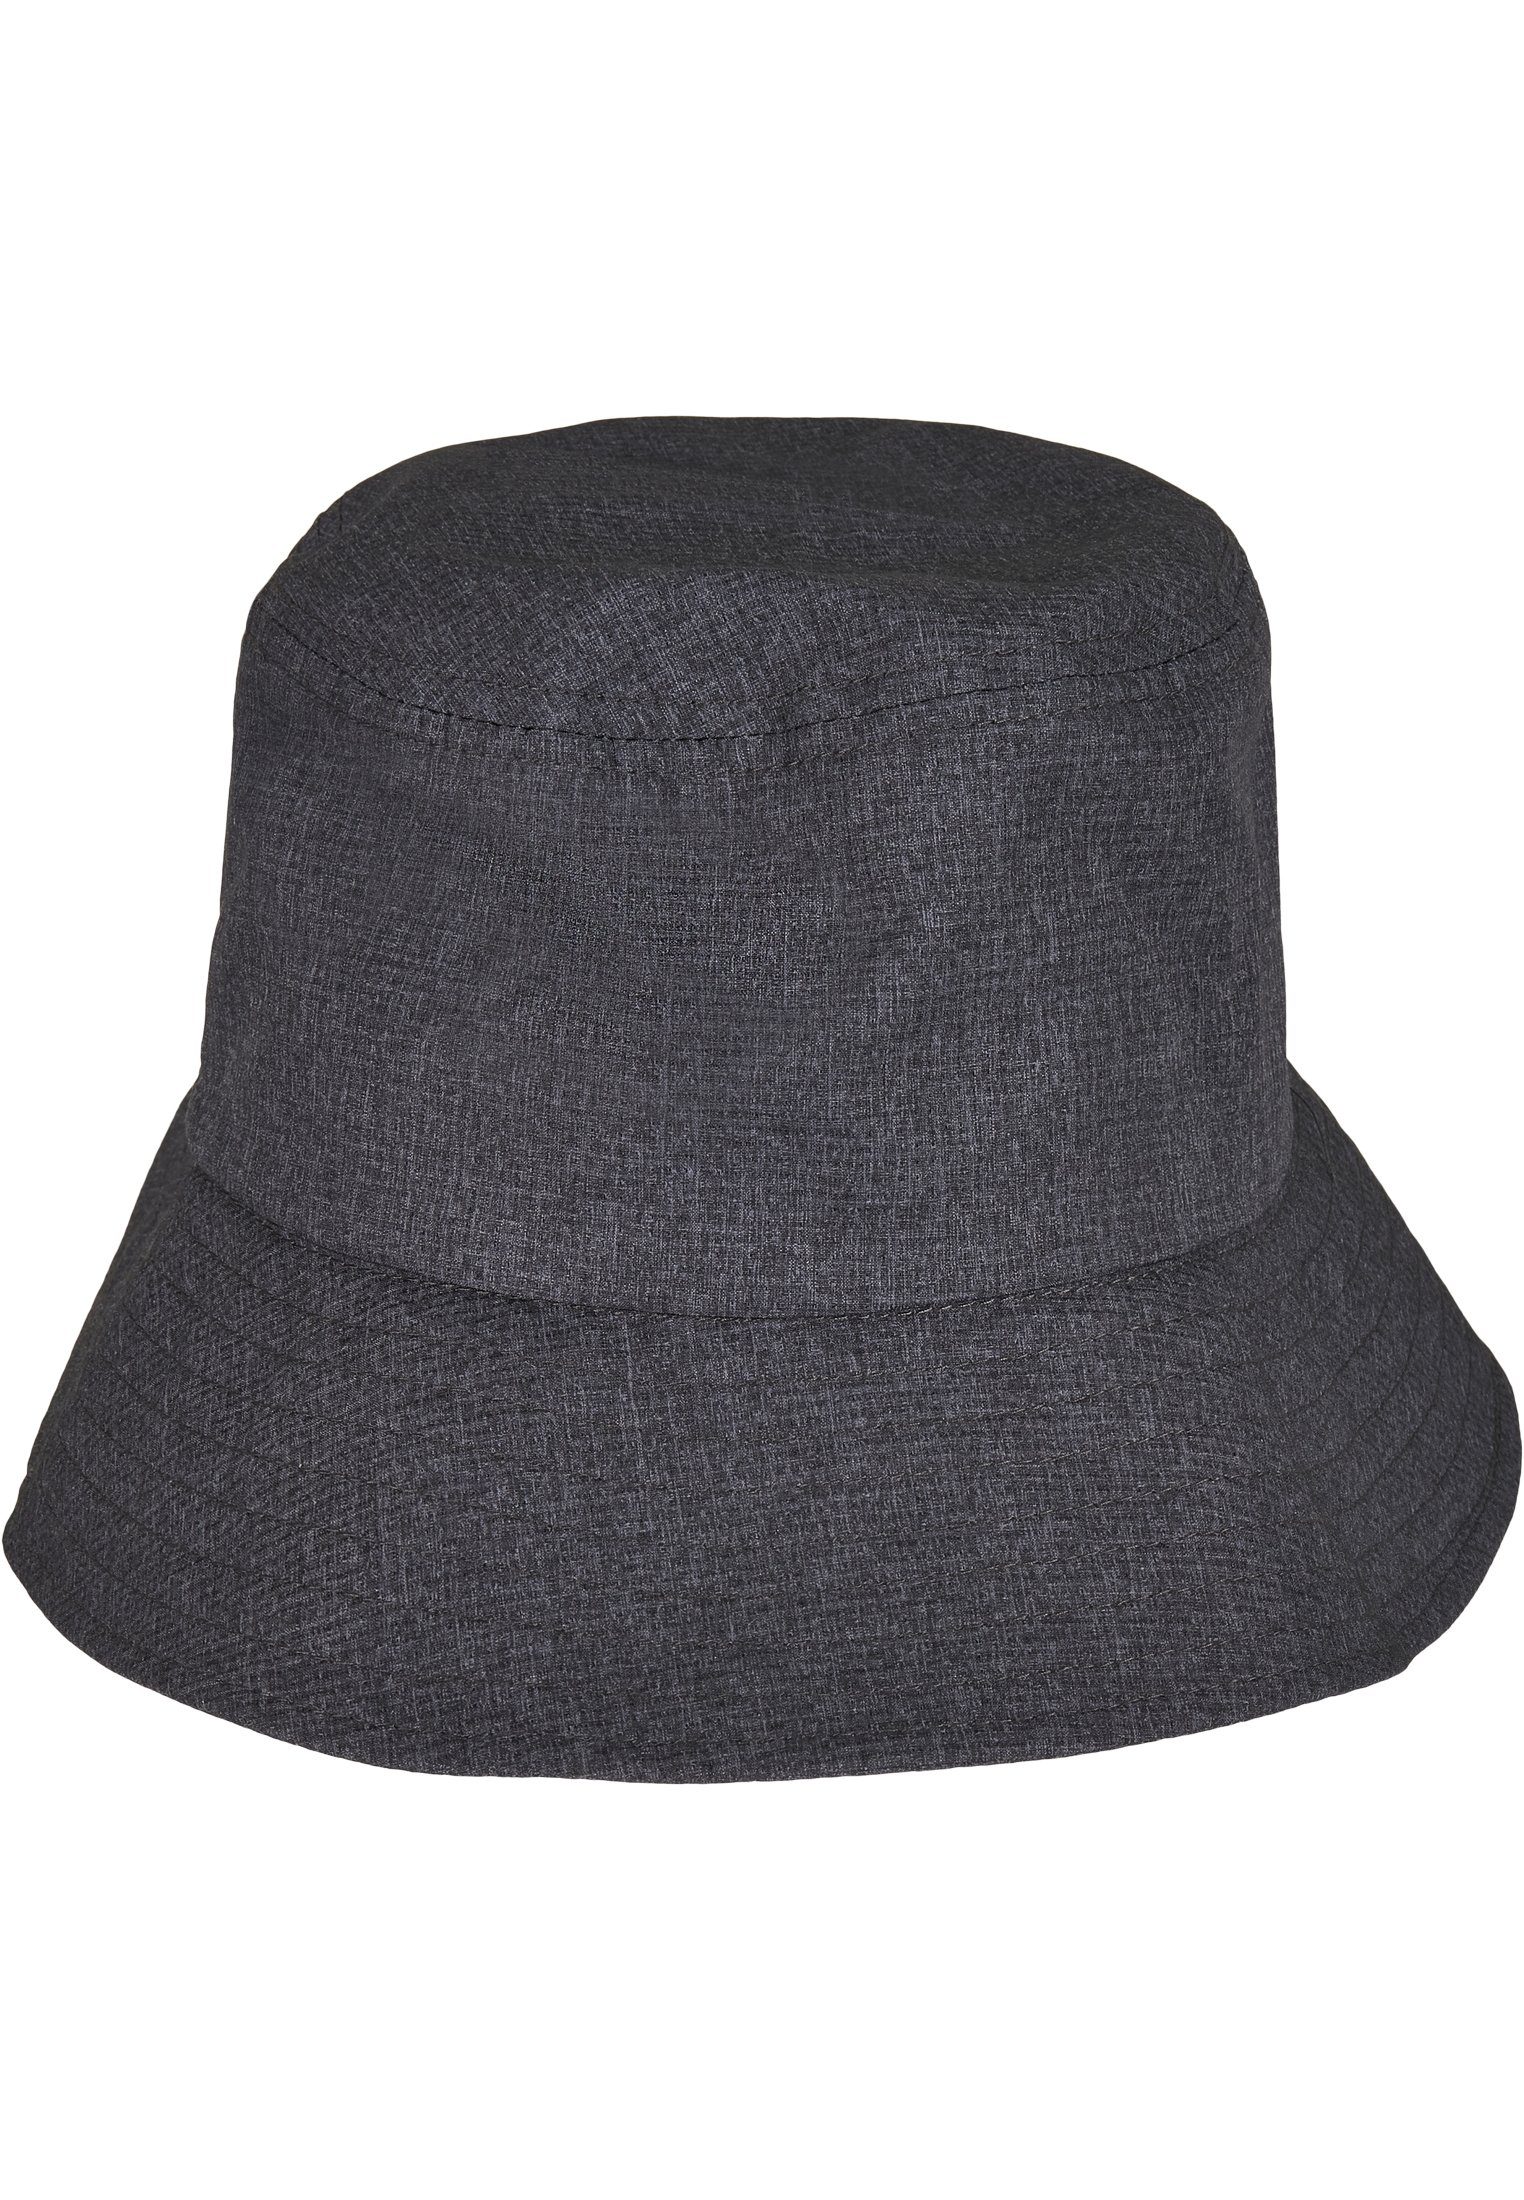 Flex Bucket Hat Bucket heathergrey Adjustable Flexfit Hat Cap Flexfit